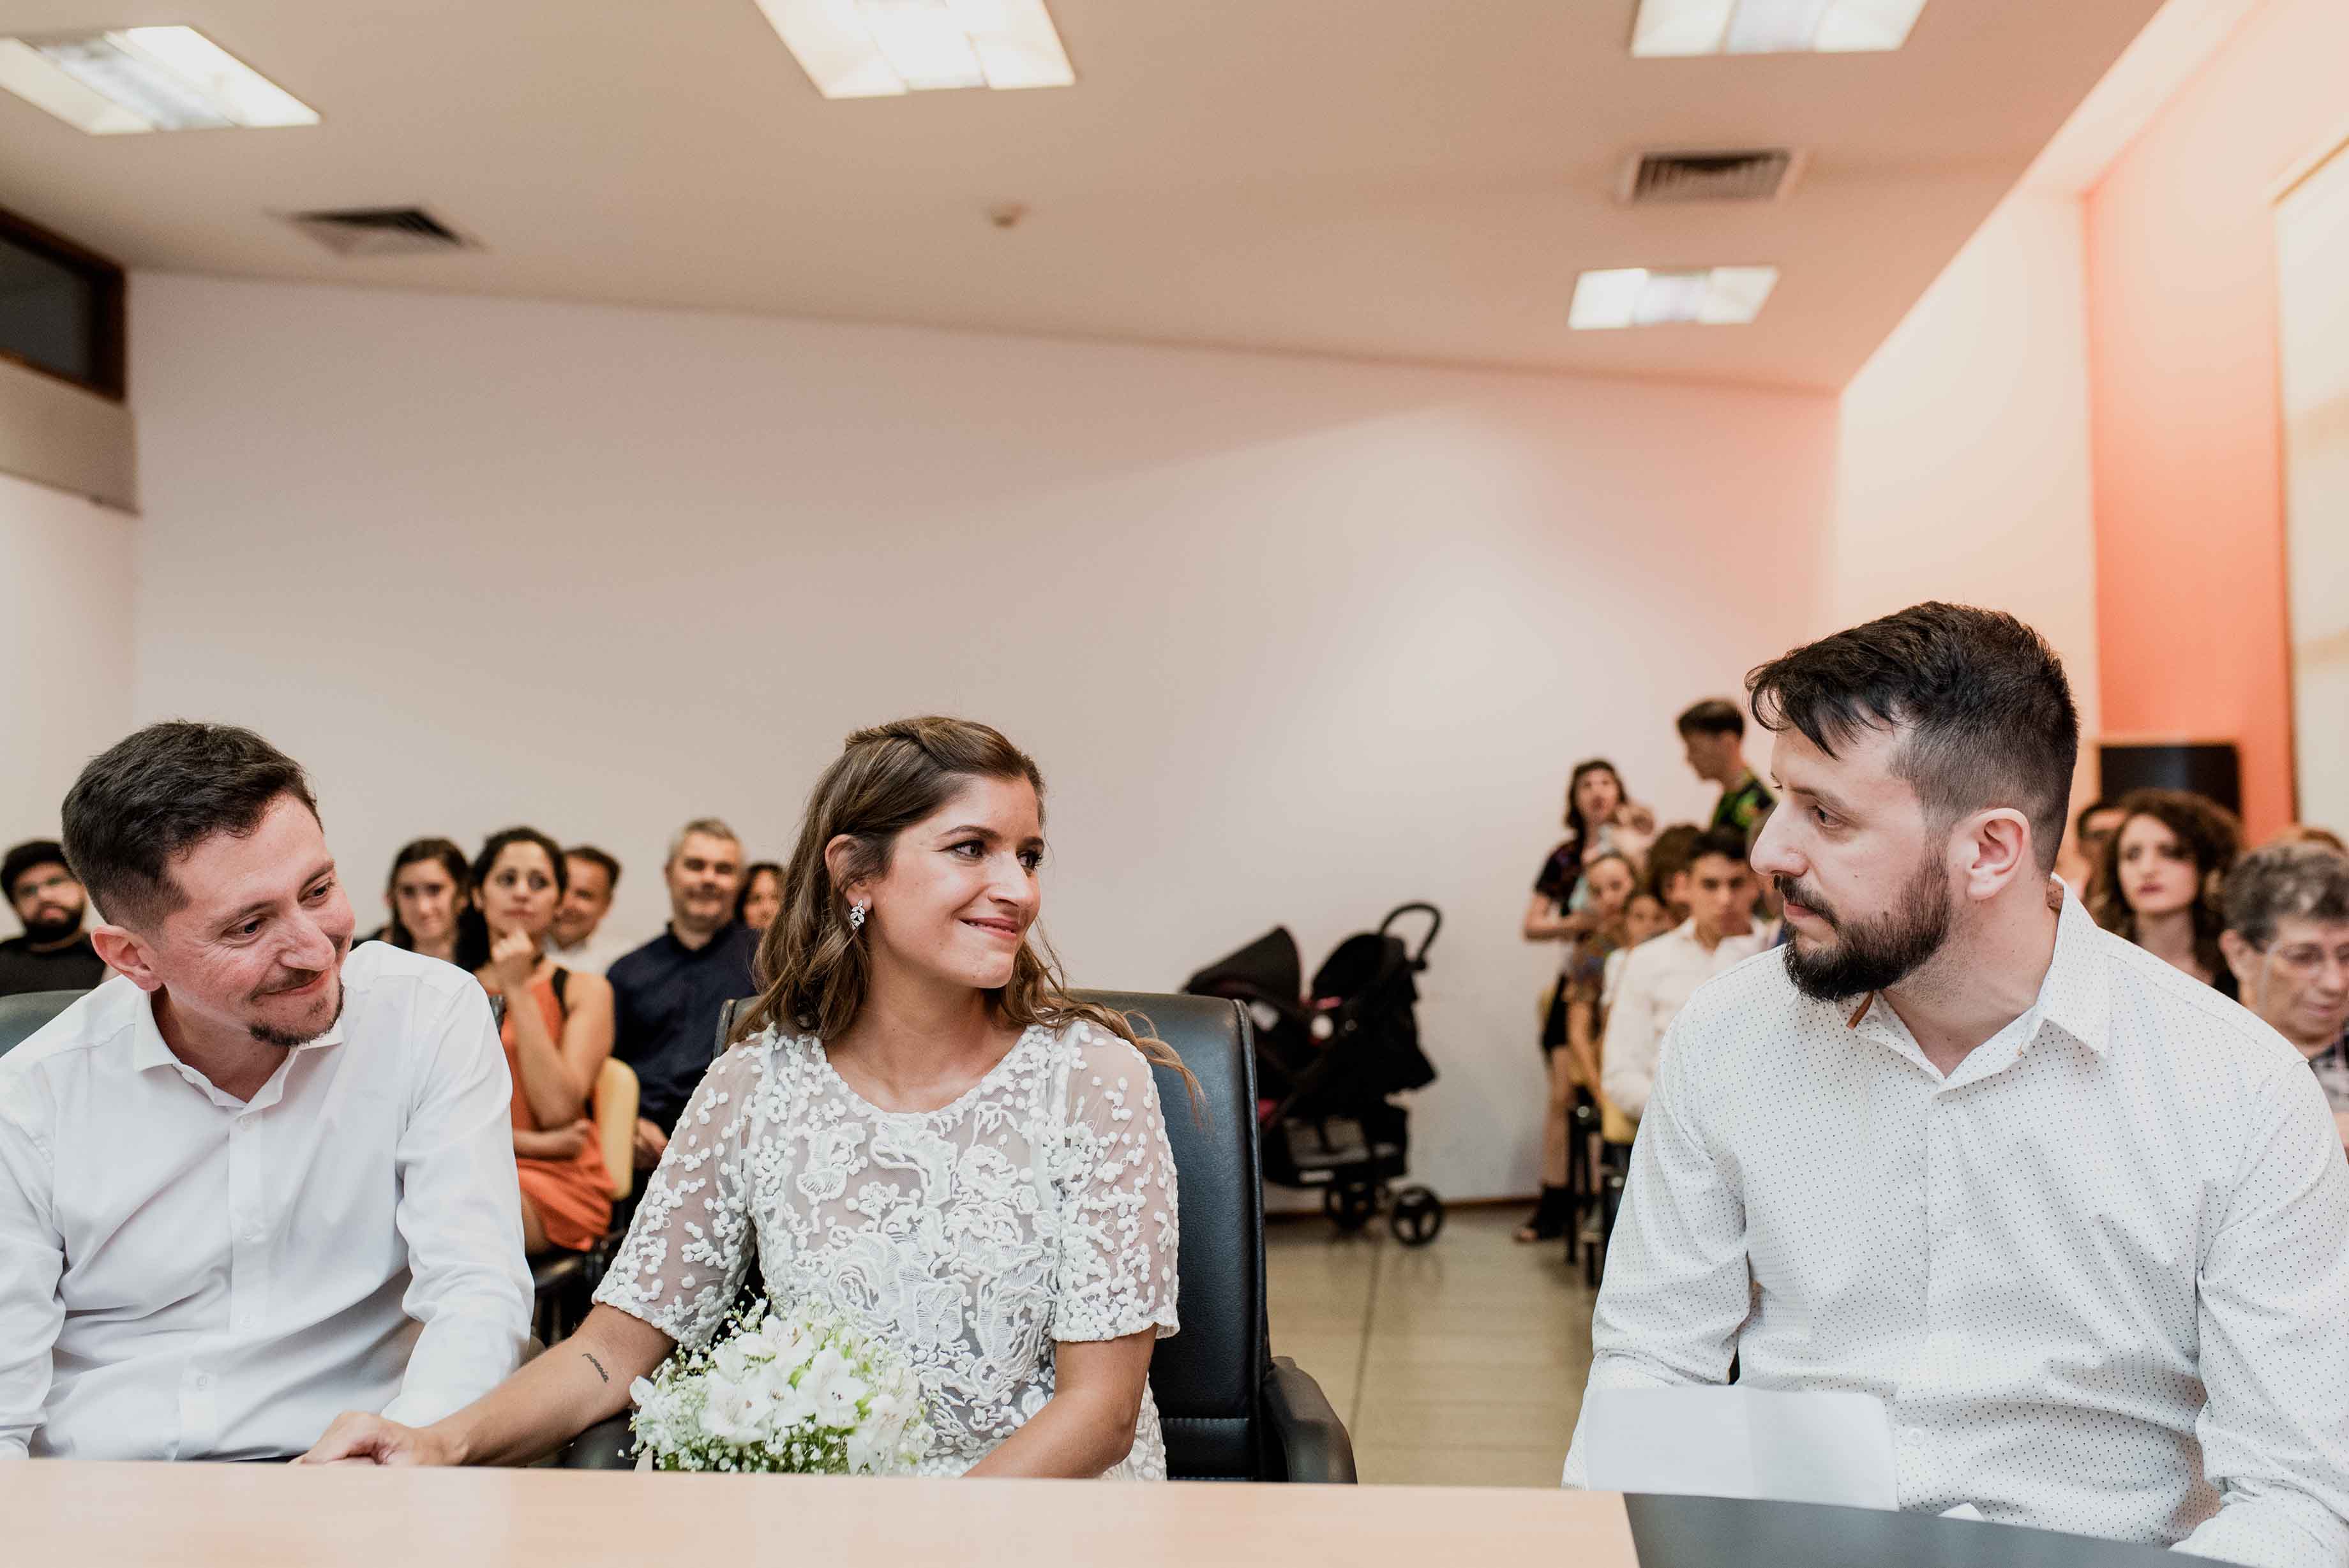 Fotos de la boda de Nay y Jota en Rosario realizadas por Bucle Fotografias Flor Bosio y Caro Clerici